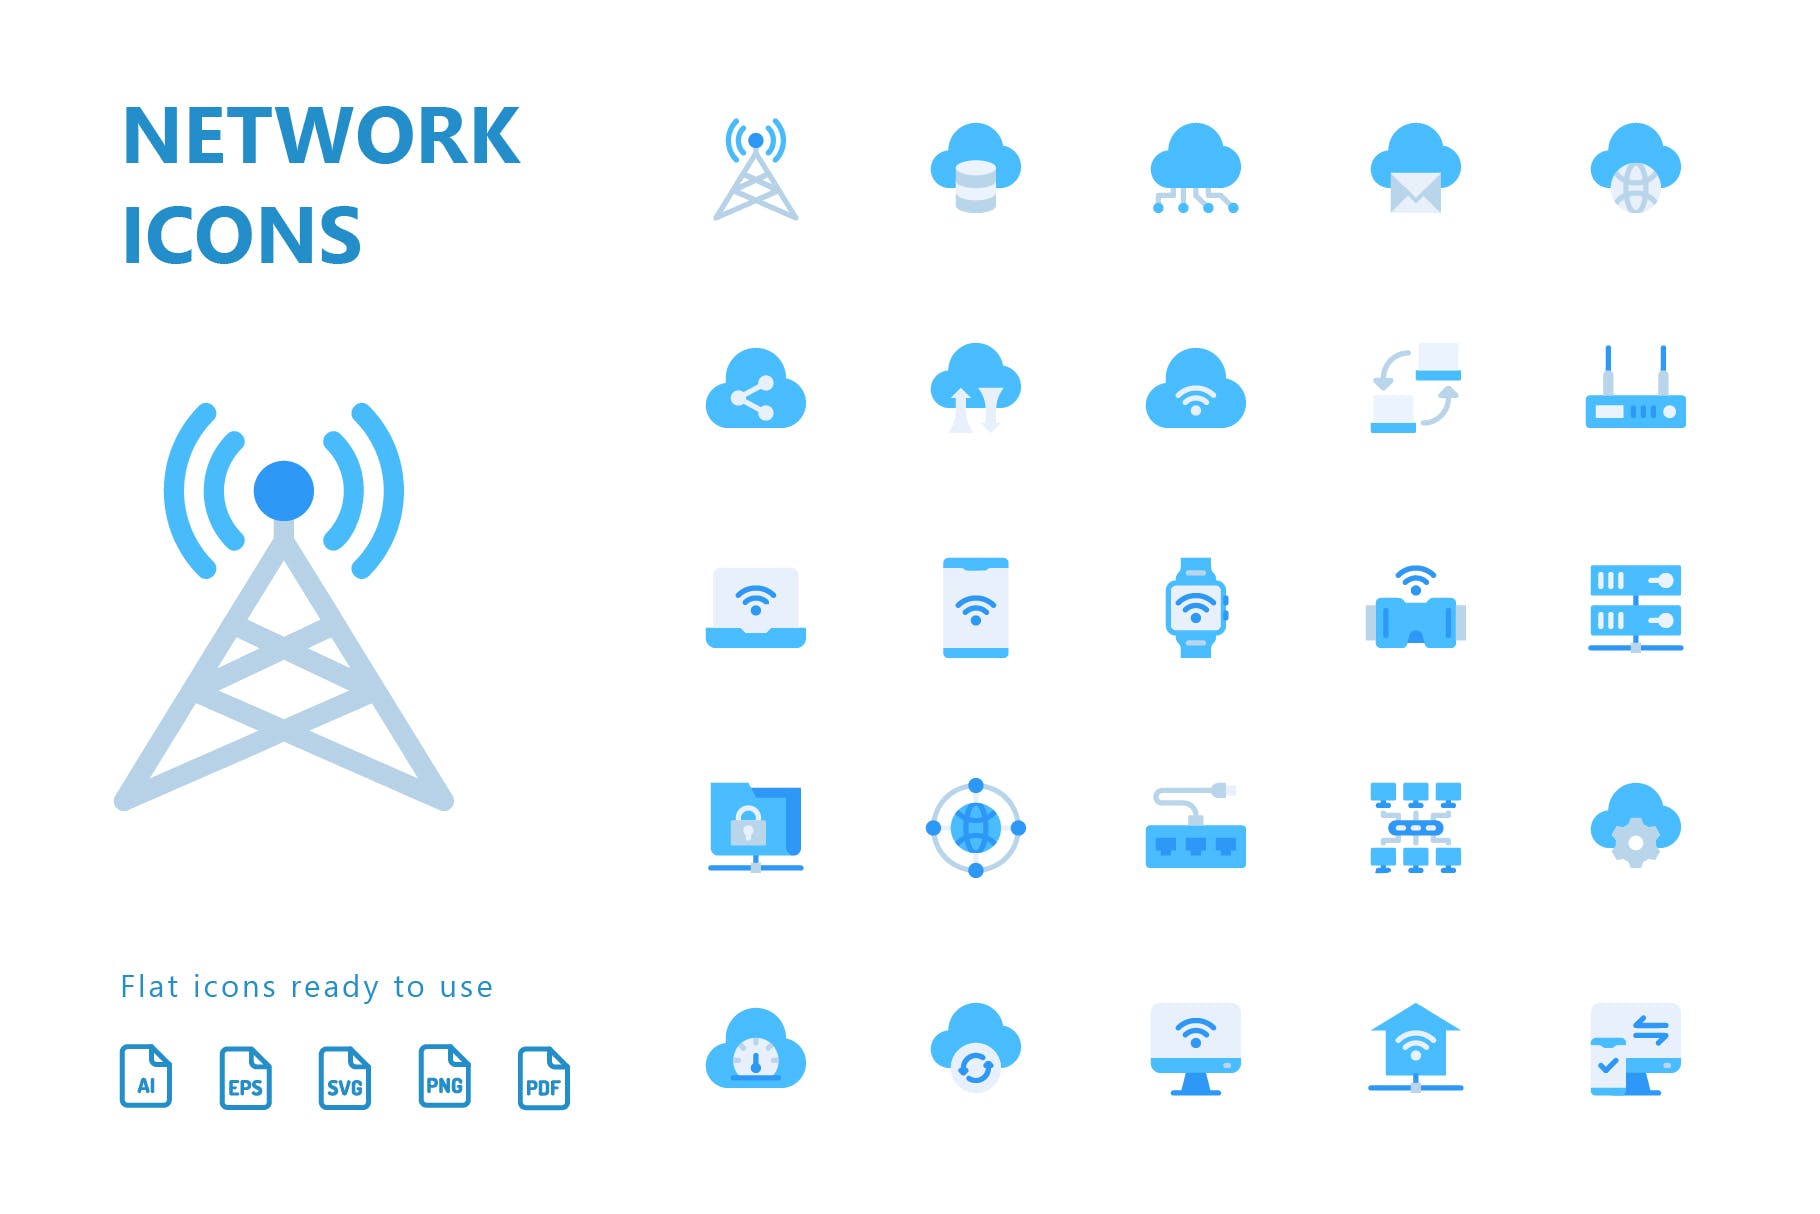 网络科技主题扁平化矢量素材库精选图标 Network Flat Icons插图(1)